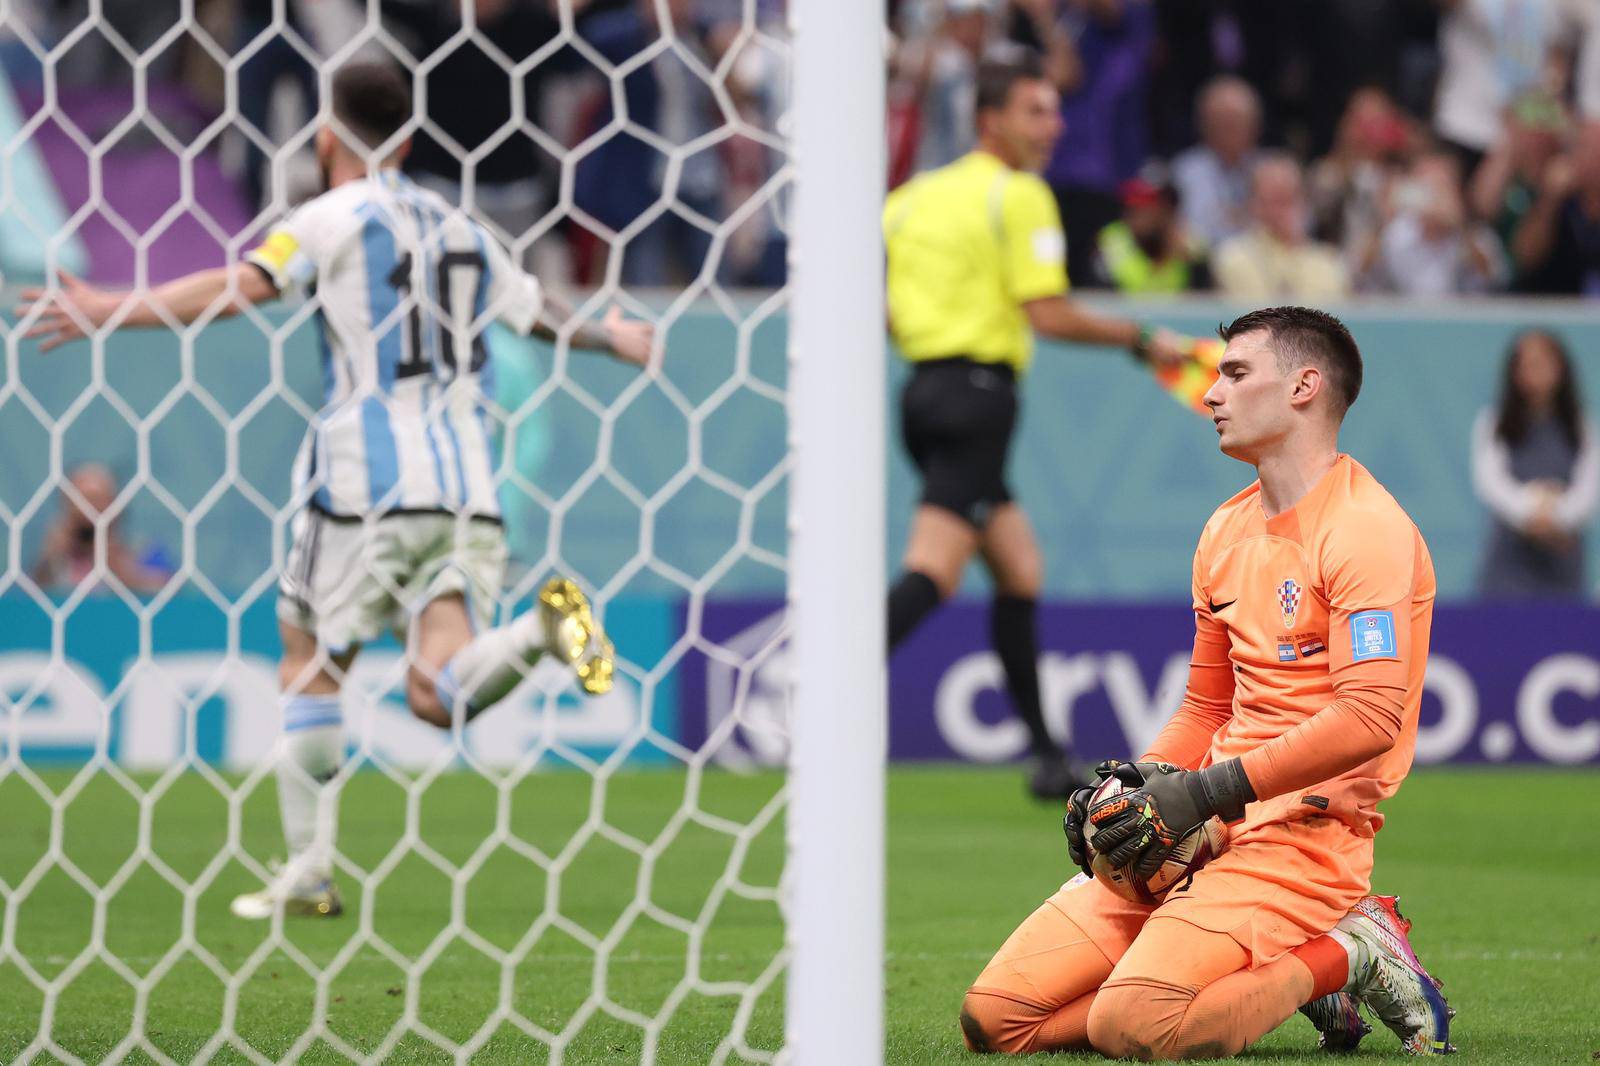 KATAR 2022 - Argentina vodi! Livakovi? je skrivio penal, Messi zabio